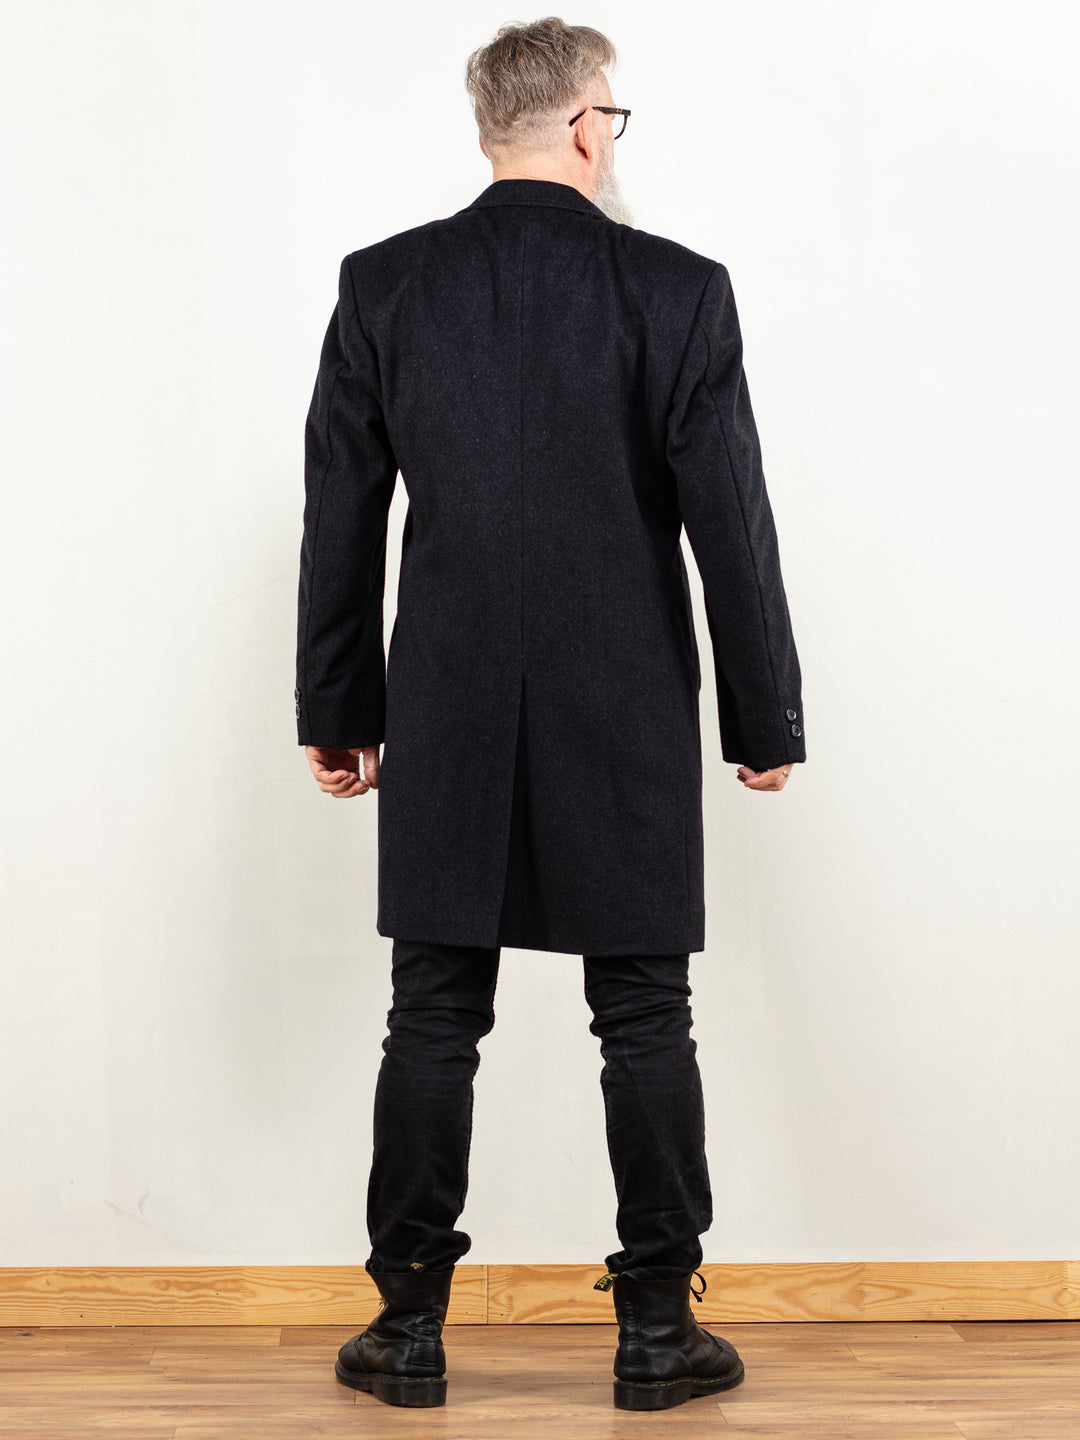 Men Wool Coat 90's vintage light longline overcoat classy gentlemen warm black wool blend coat sustainable fashion everyday wear size large